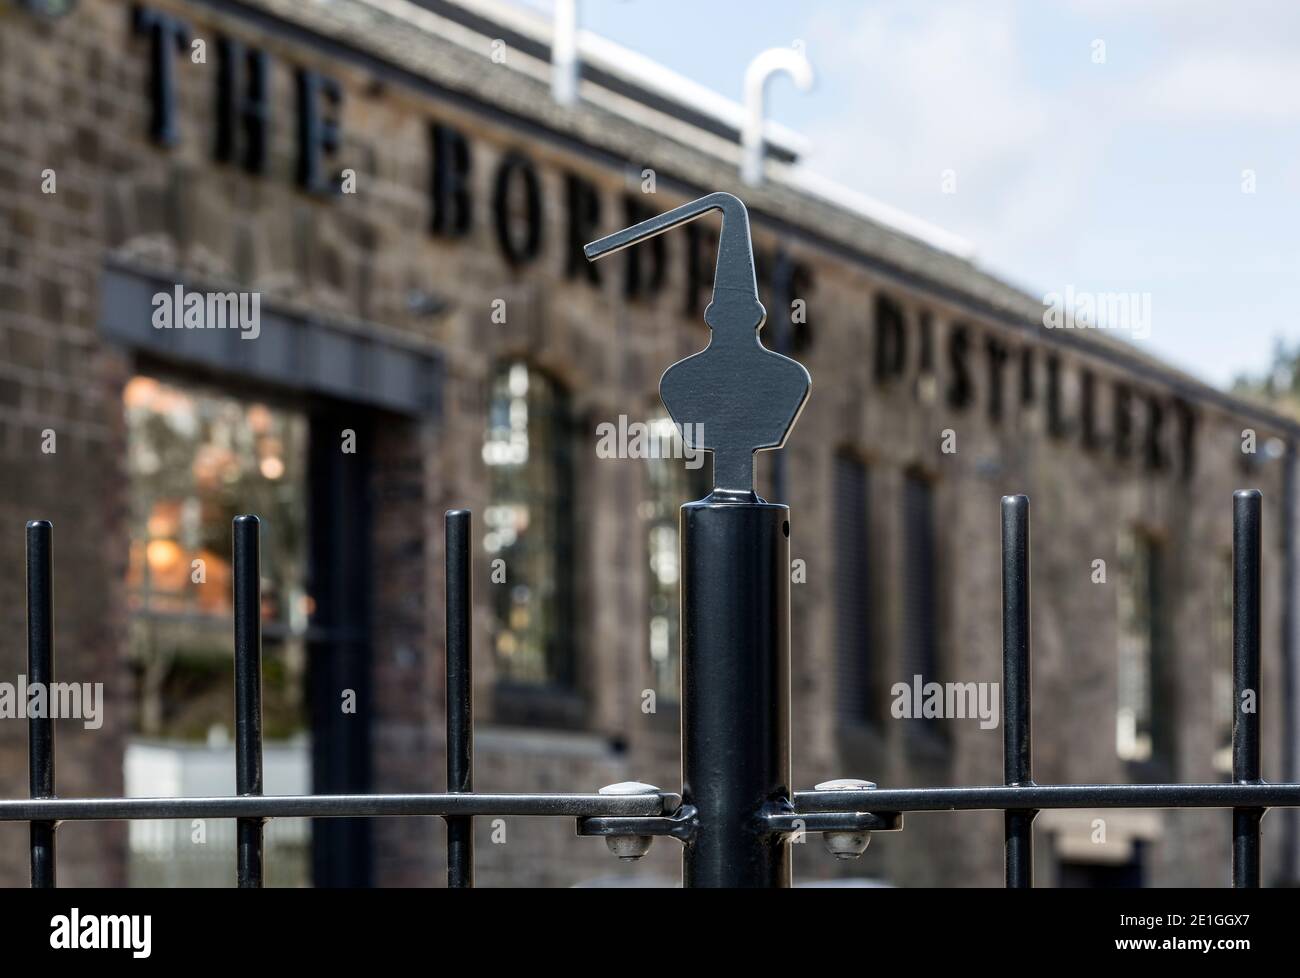 Vue extérieure de la distillerie Borders, Hawick, Écosse, Royaume-Uni. Lauréat du prix Architects Journal Retrofit 2018 et du prix Civic Trust 2019 Banque D'Images